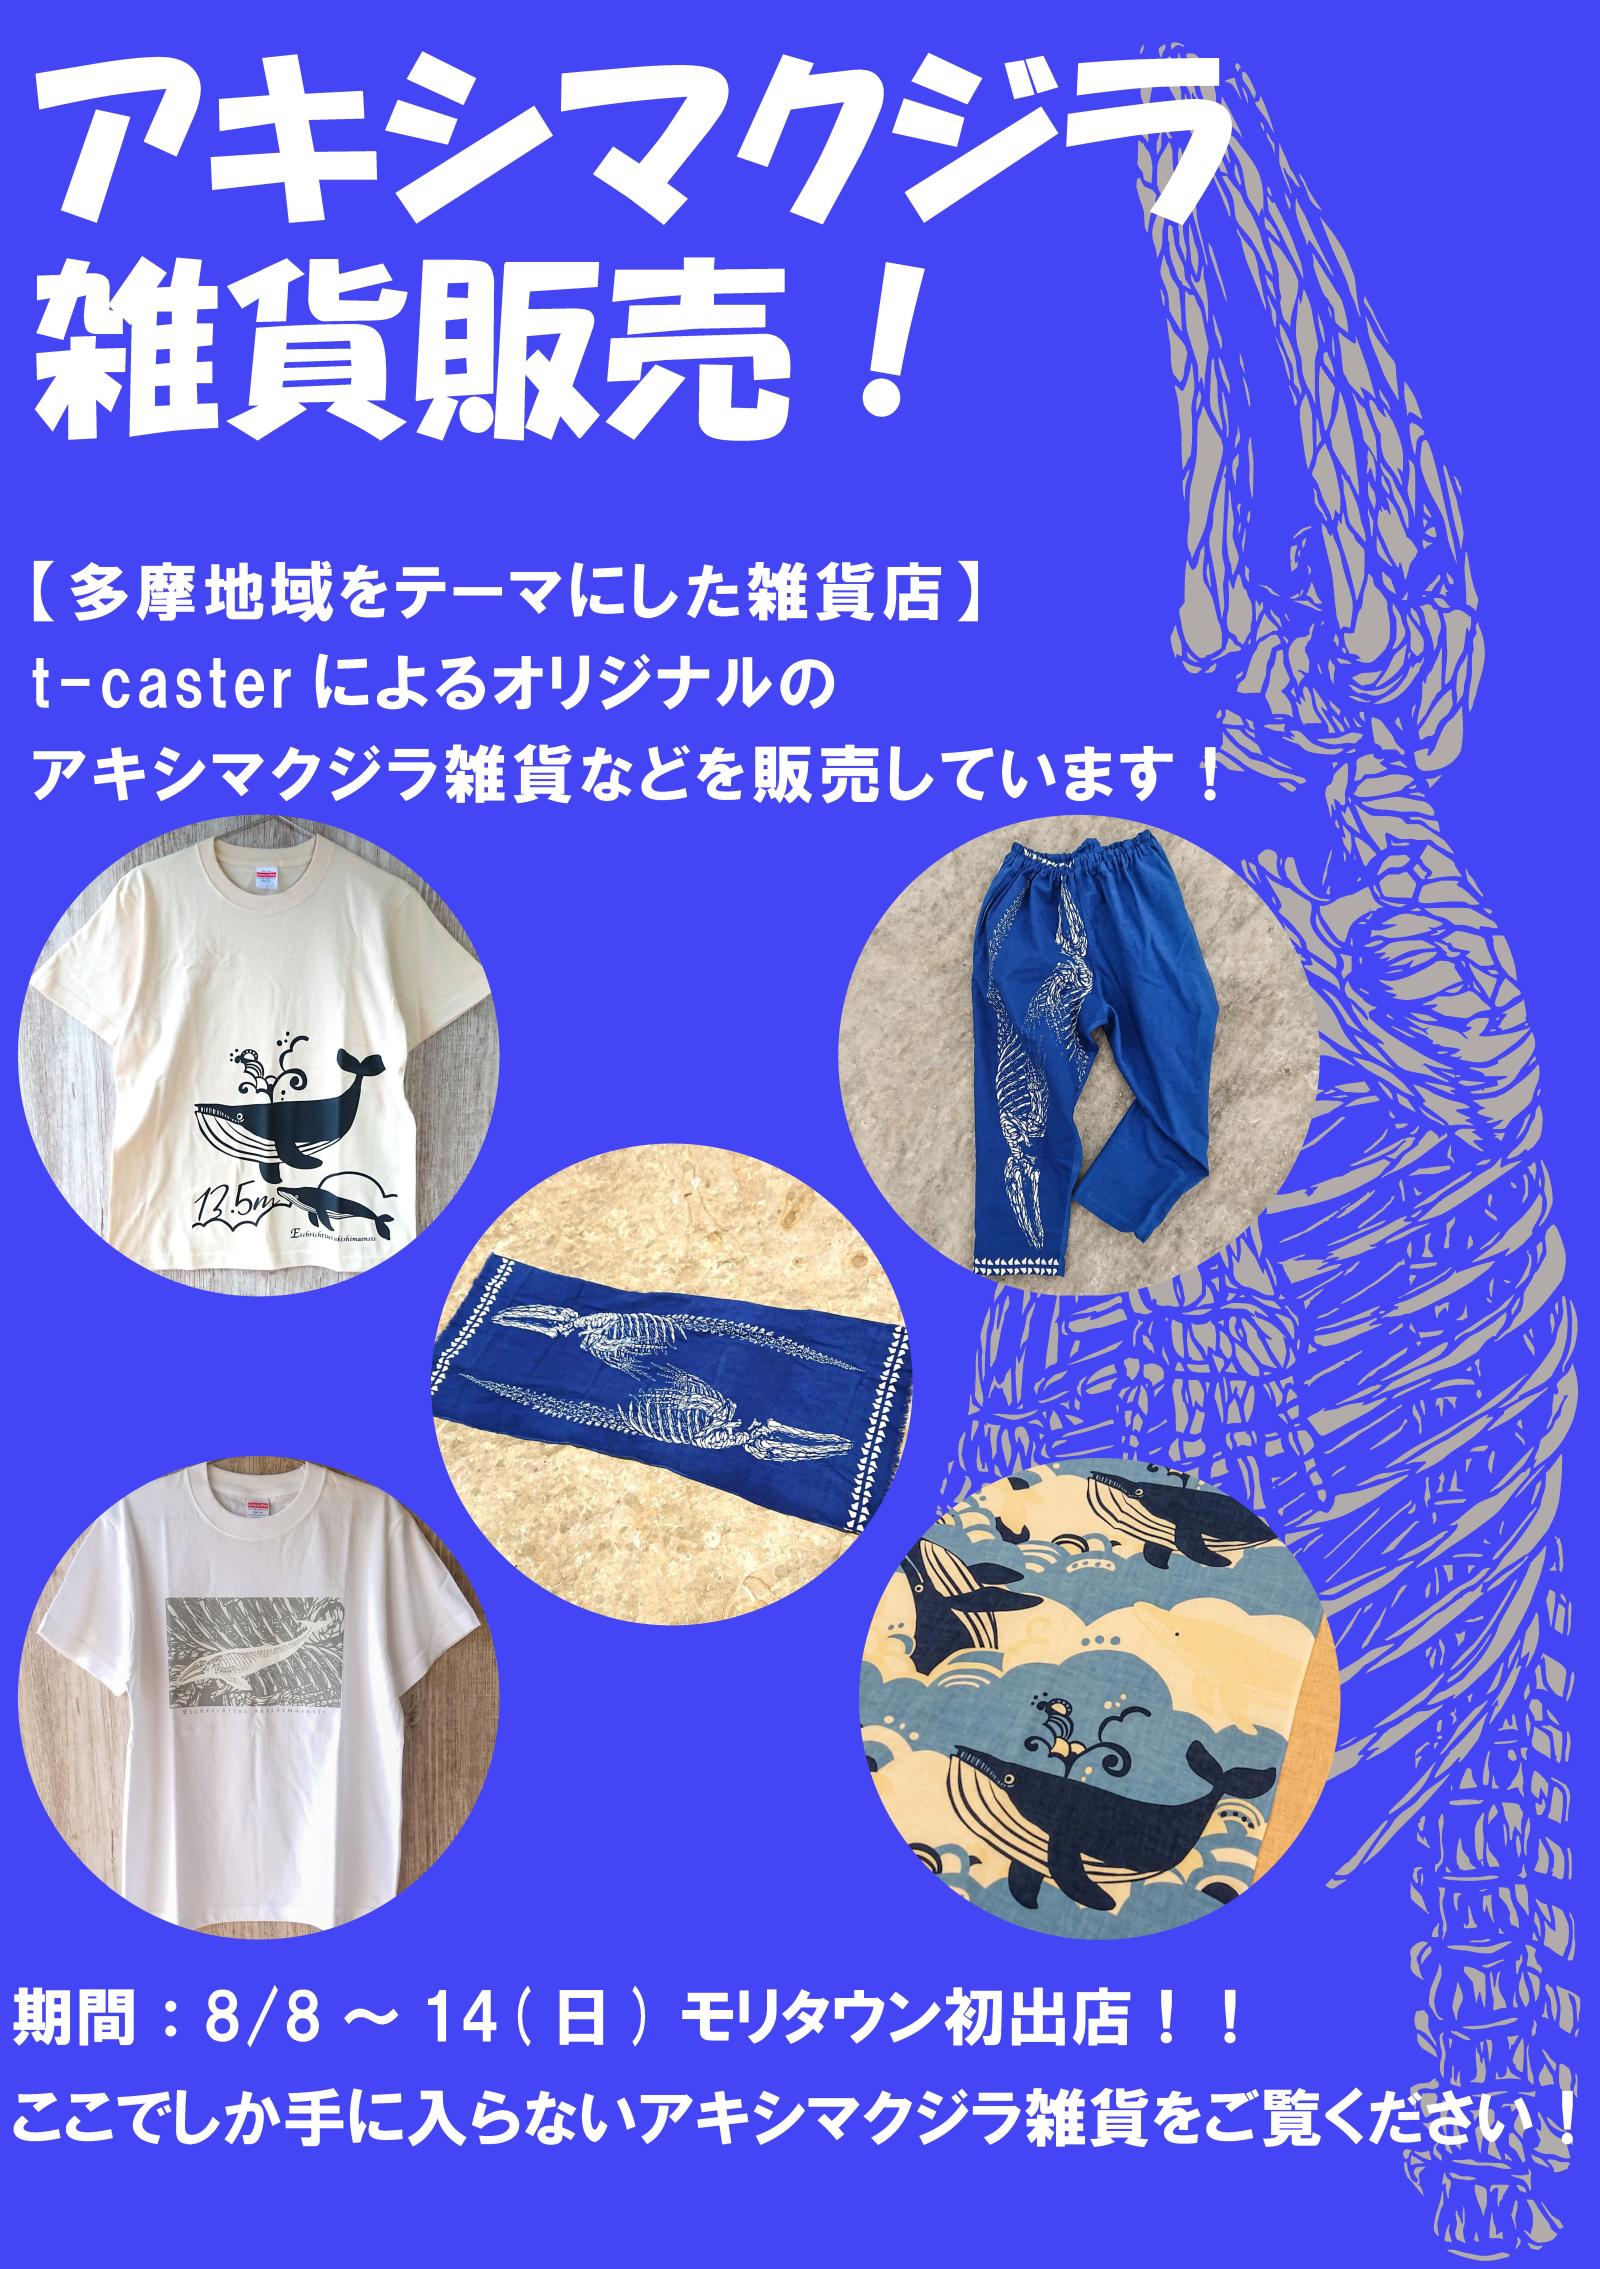 【期間限定催事】アキシマクジラ雑貨販売